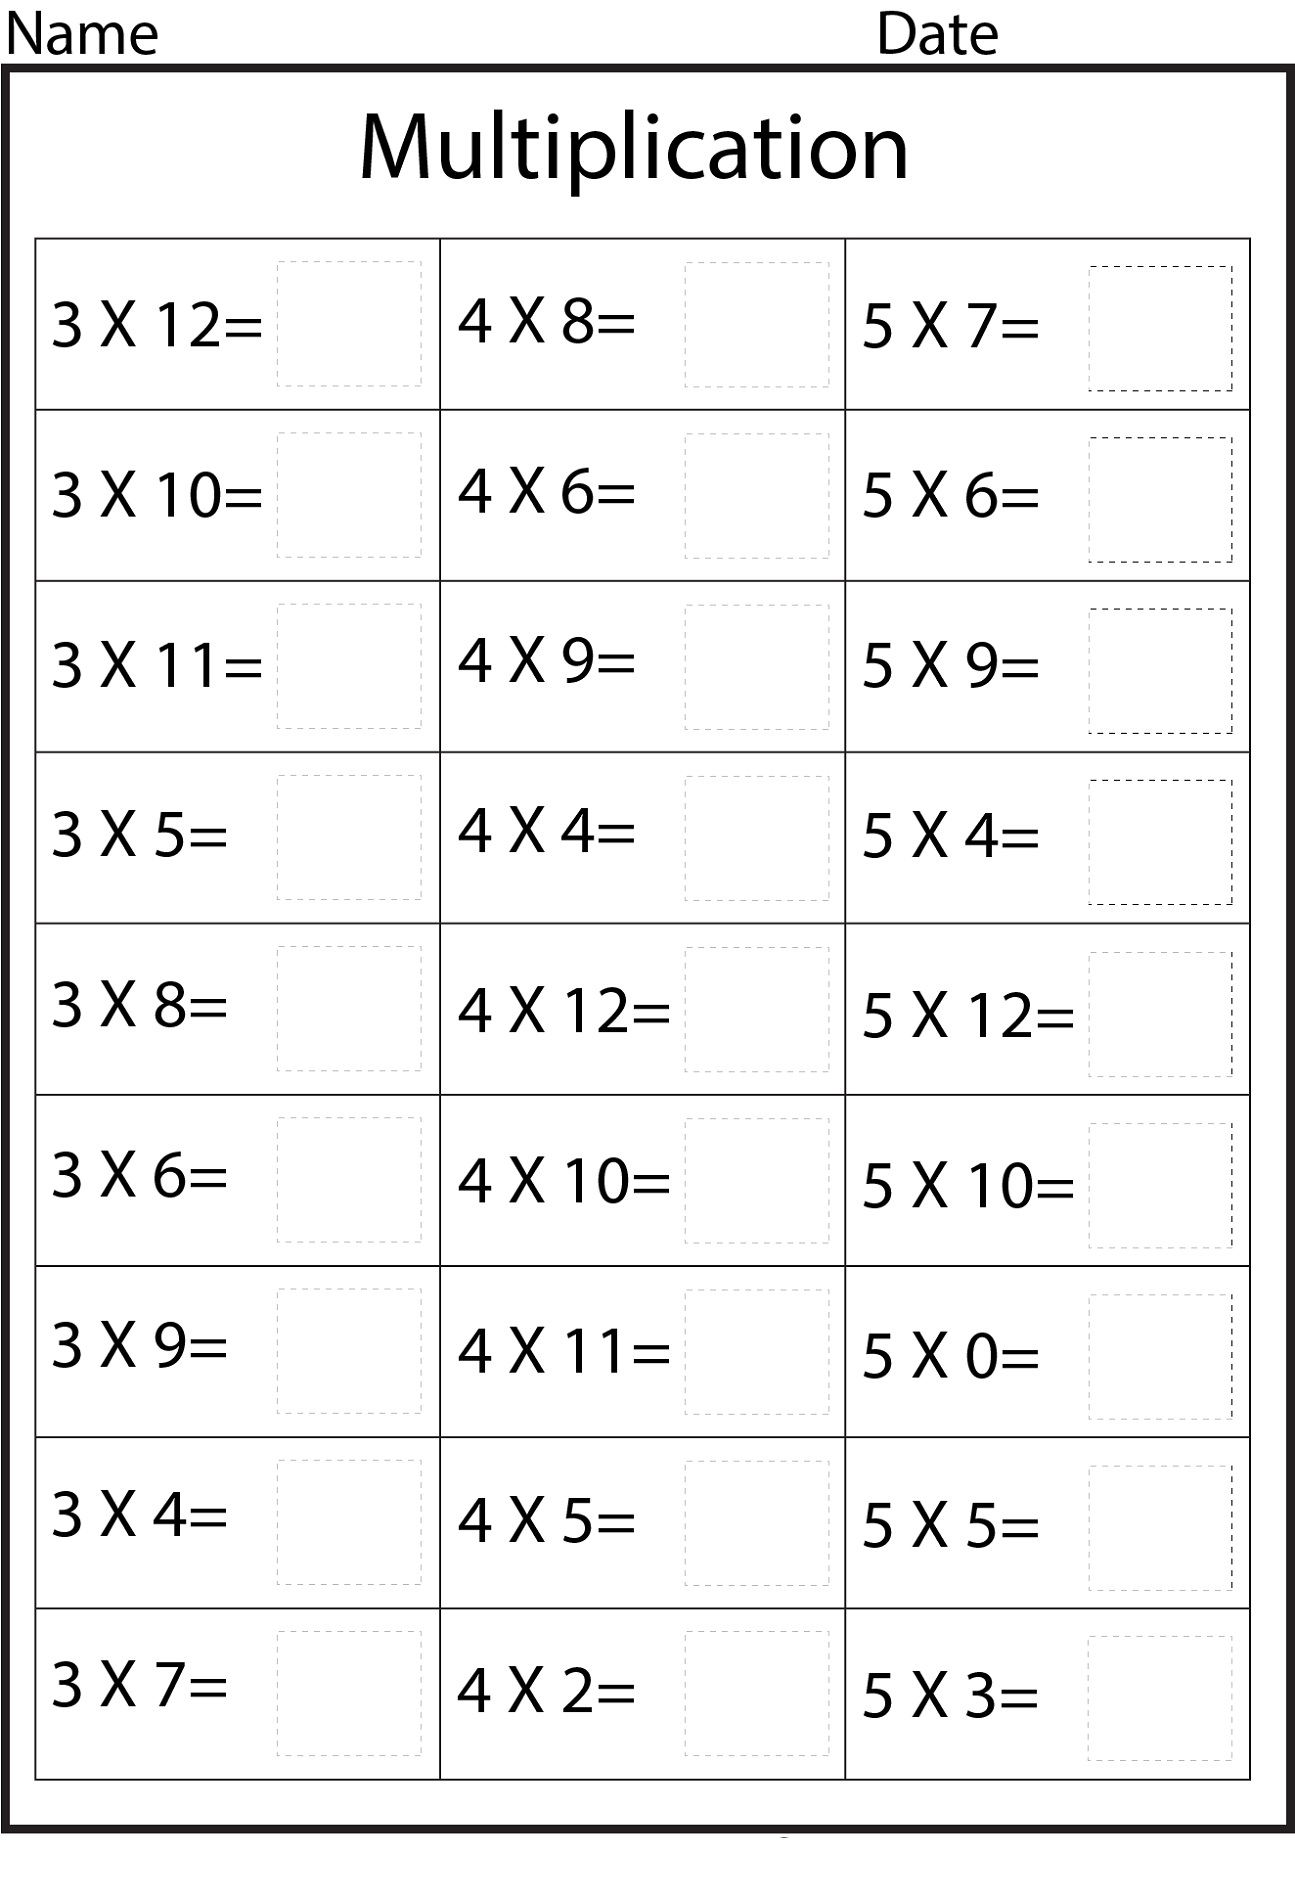 12 multiplication sheet